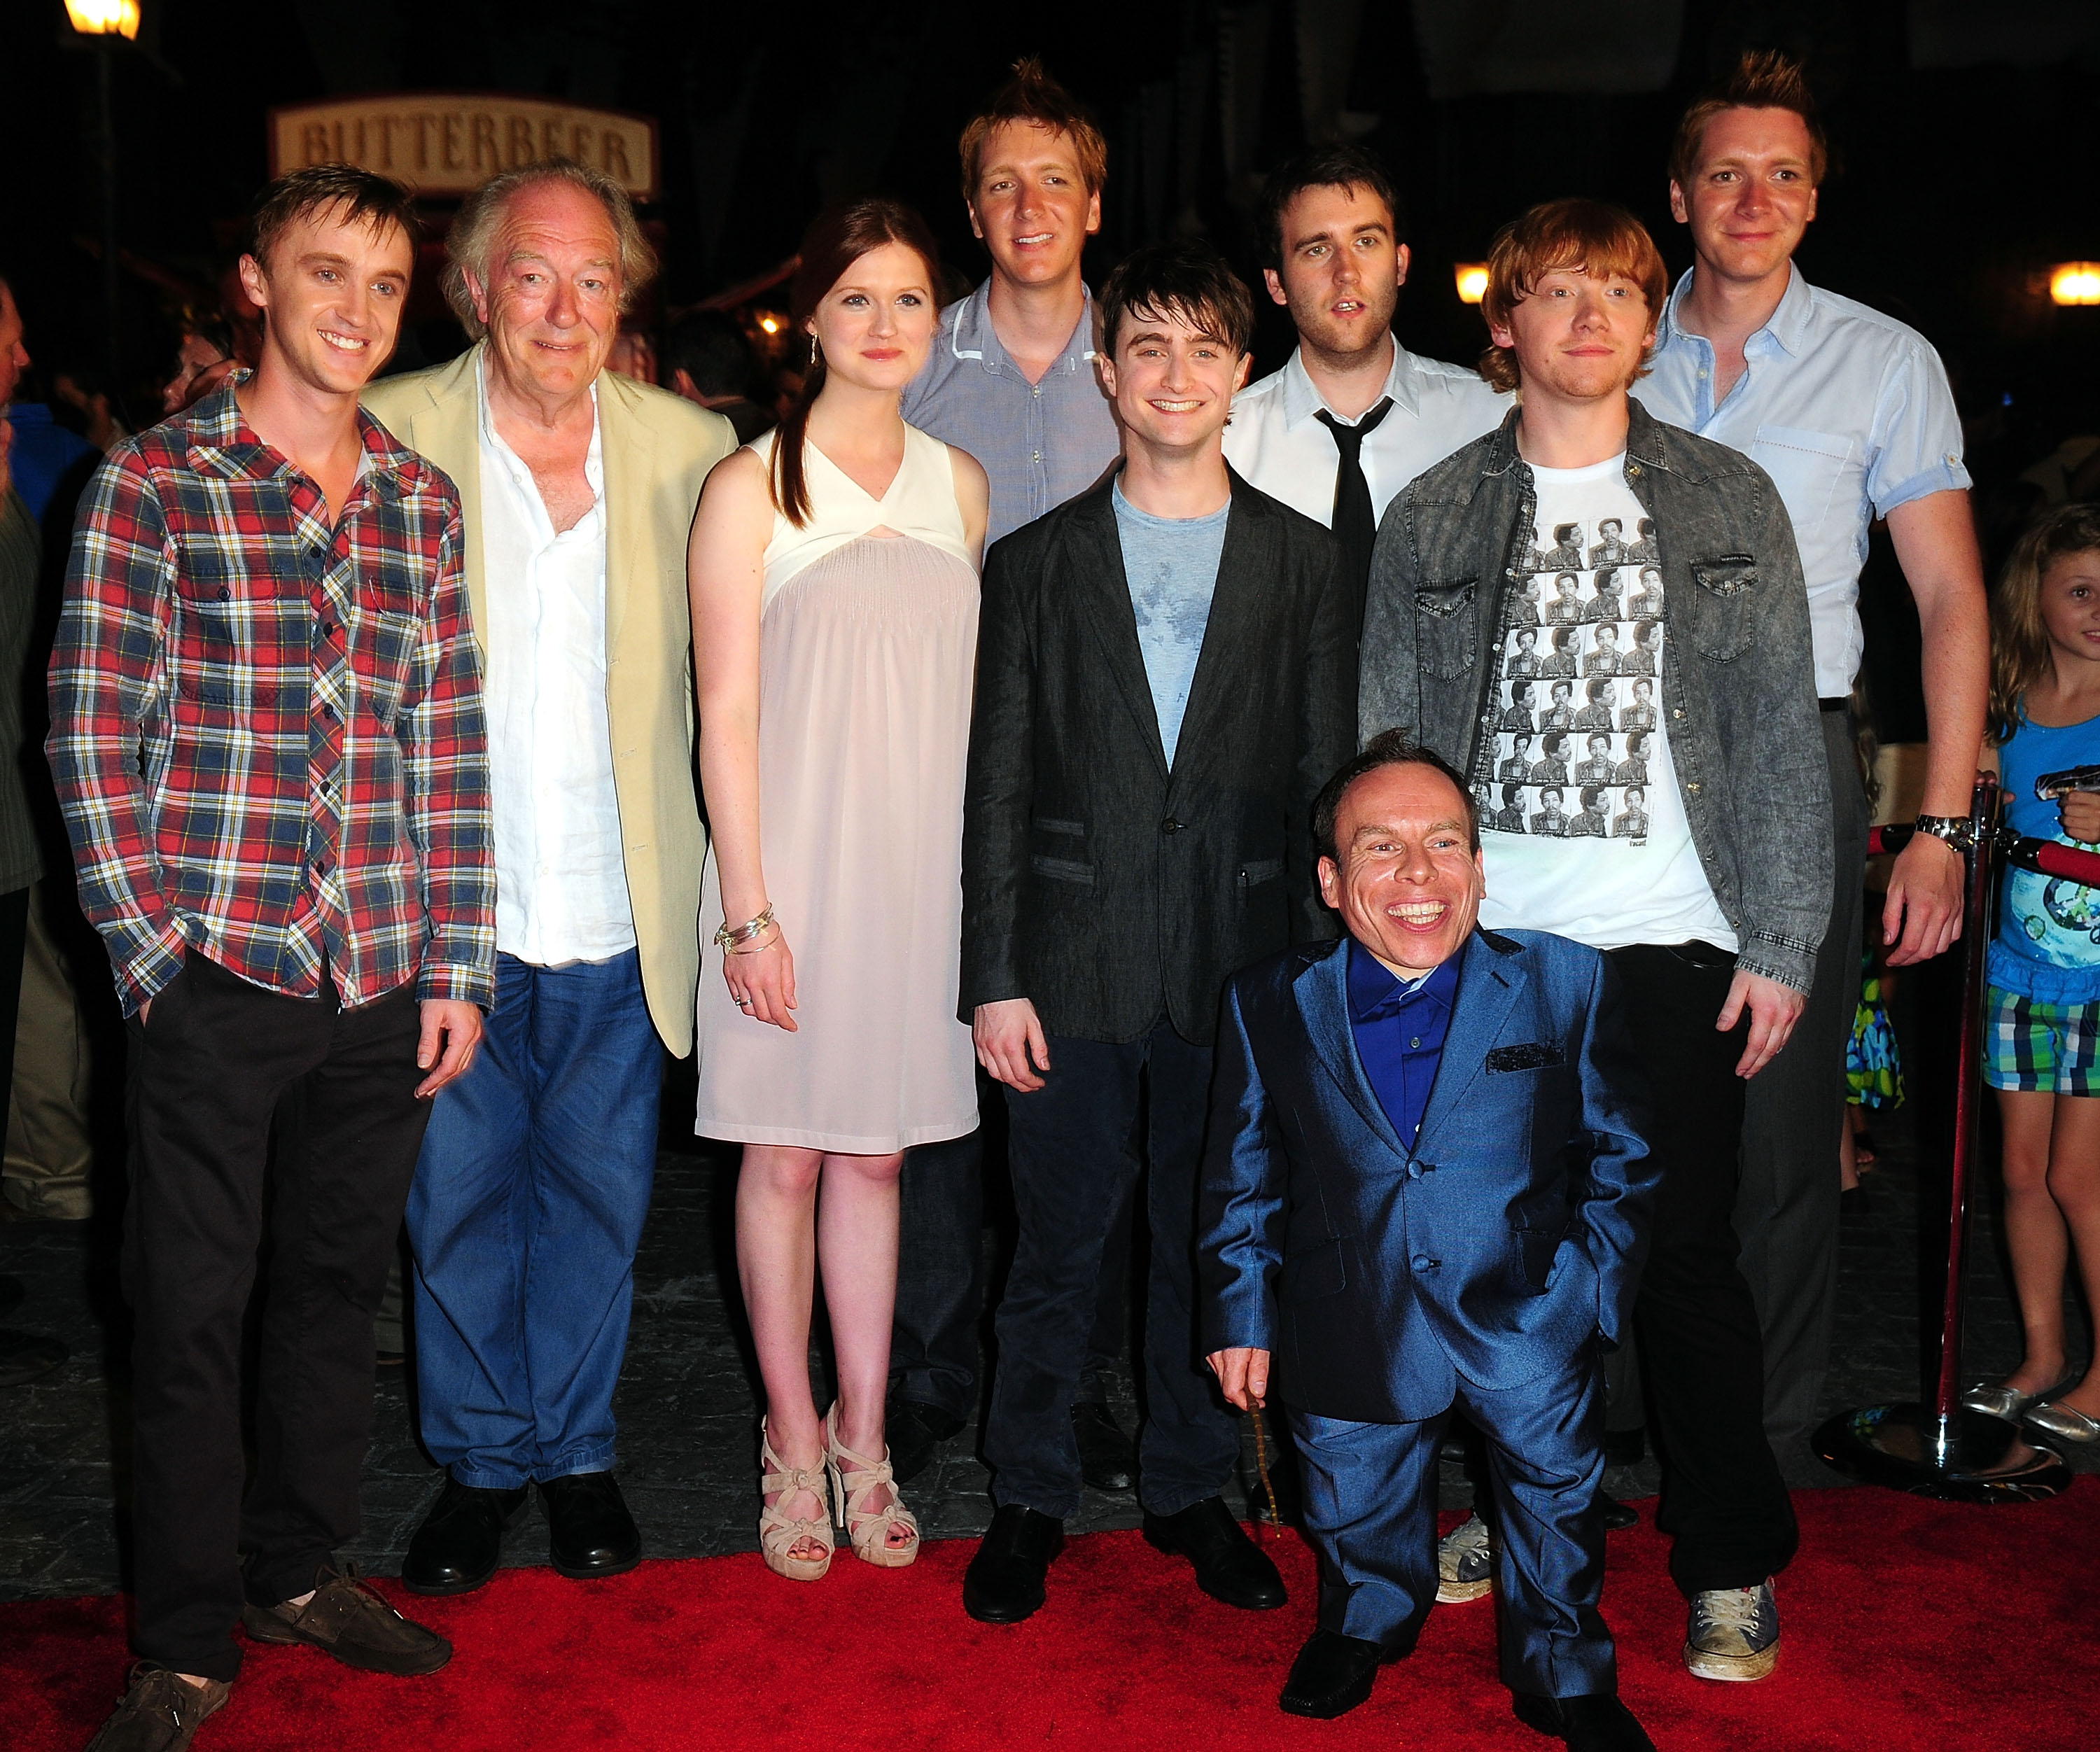 Sir Michael Gambon con algunos miembros del reparto de la franquicia "Harry Potter" en una gran inauguración en Orlando, Florida, el 16 de junio de 2010. | Foto: Getty Images